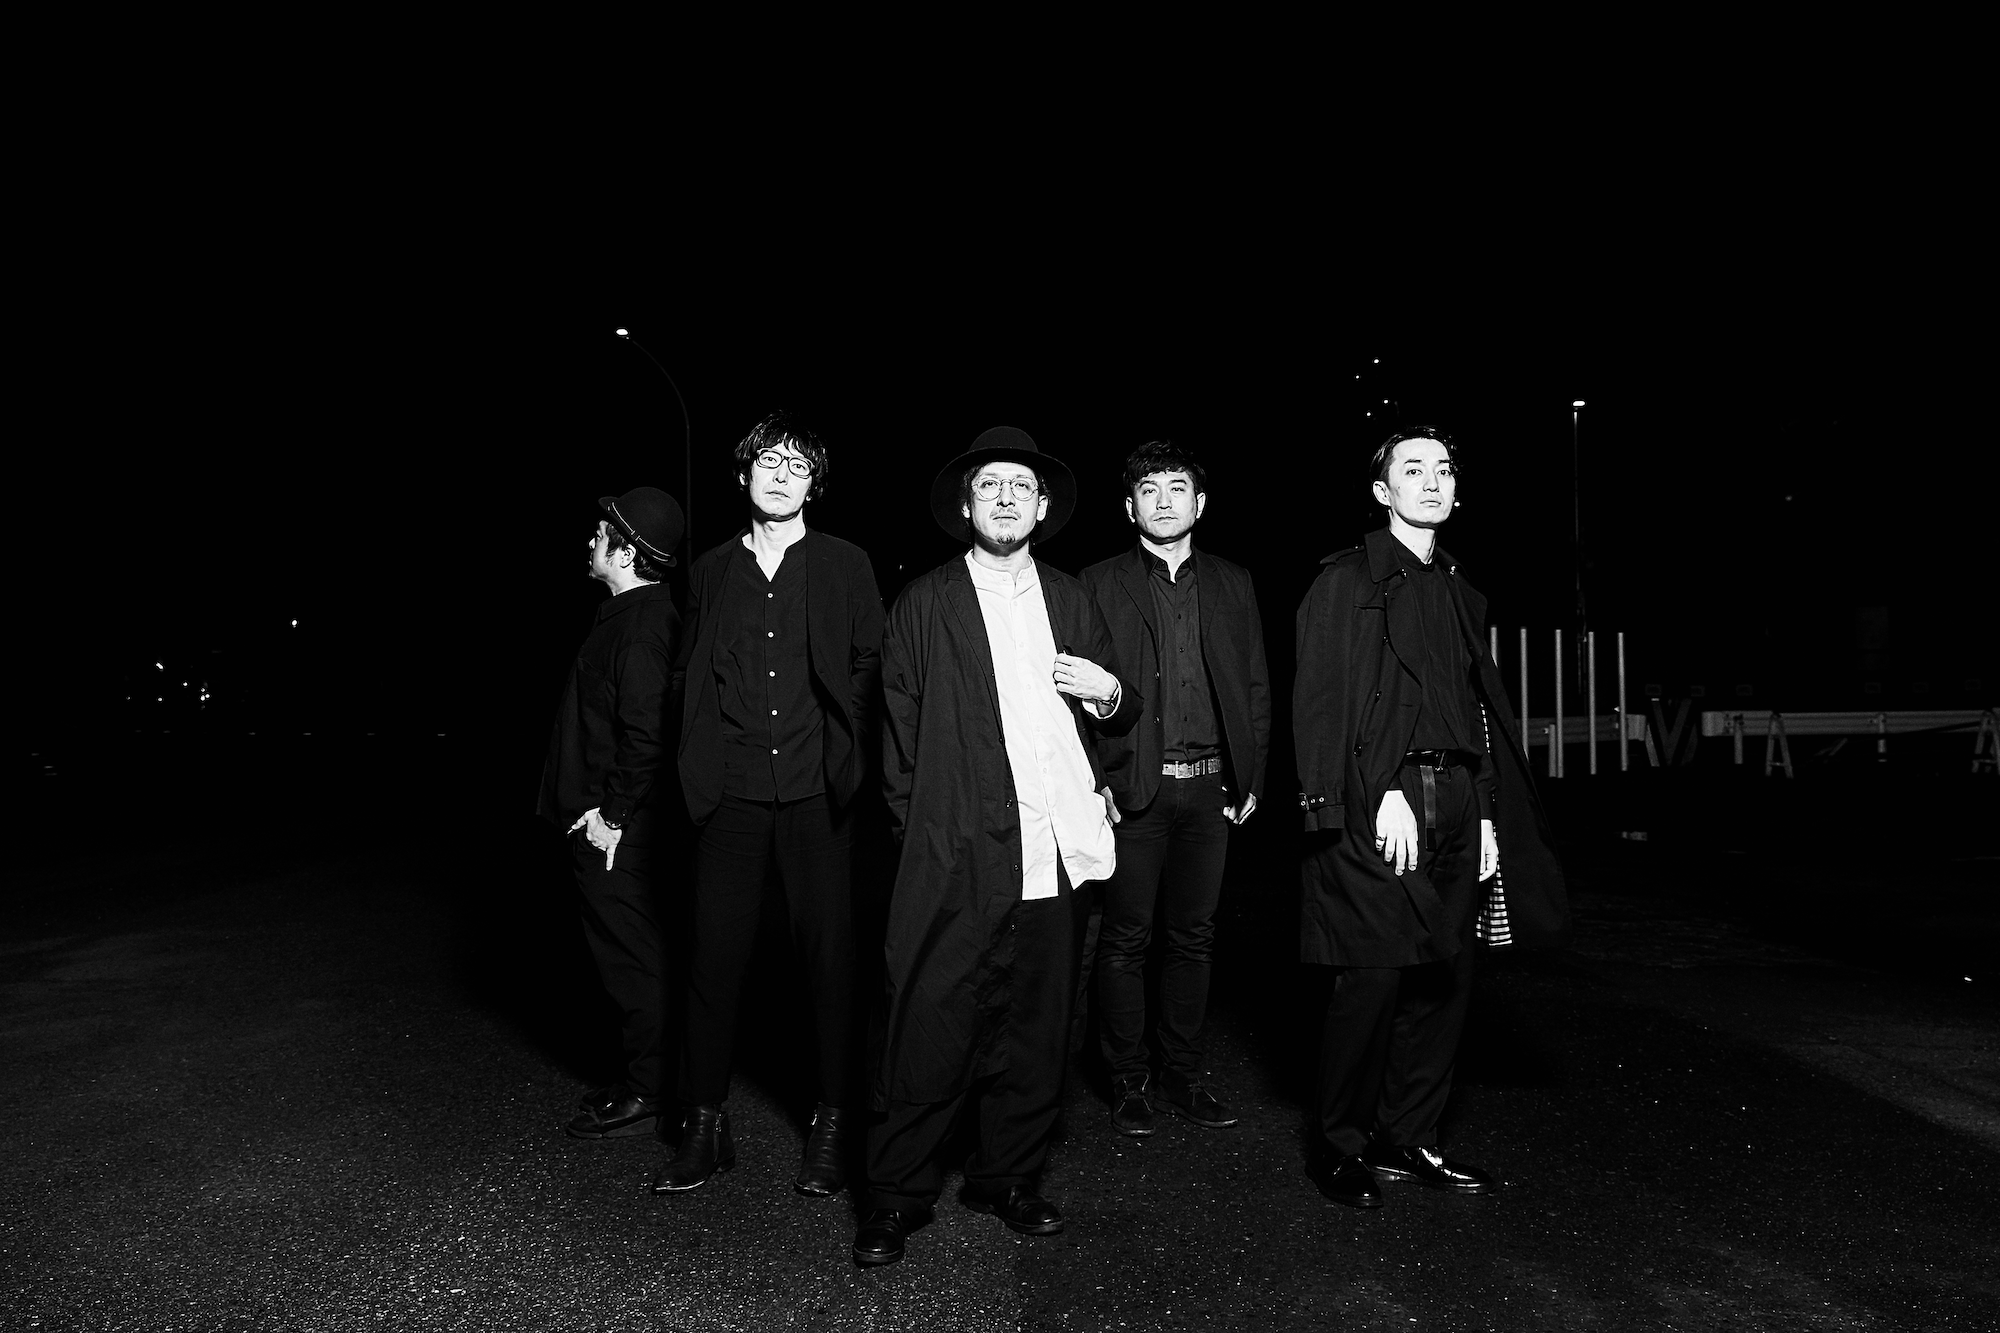 La banda japonesa downy llega a LeRockPsicophonique con Depletion, su nuevo single